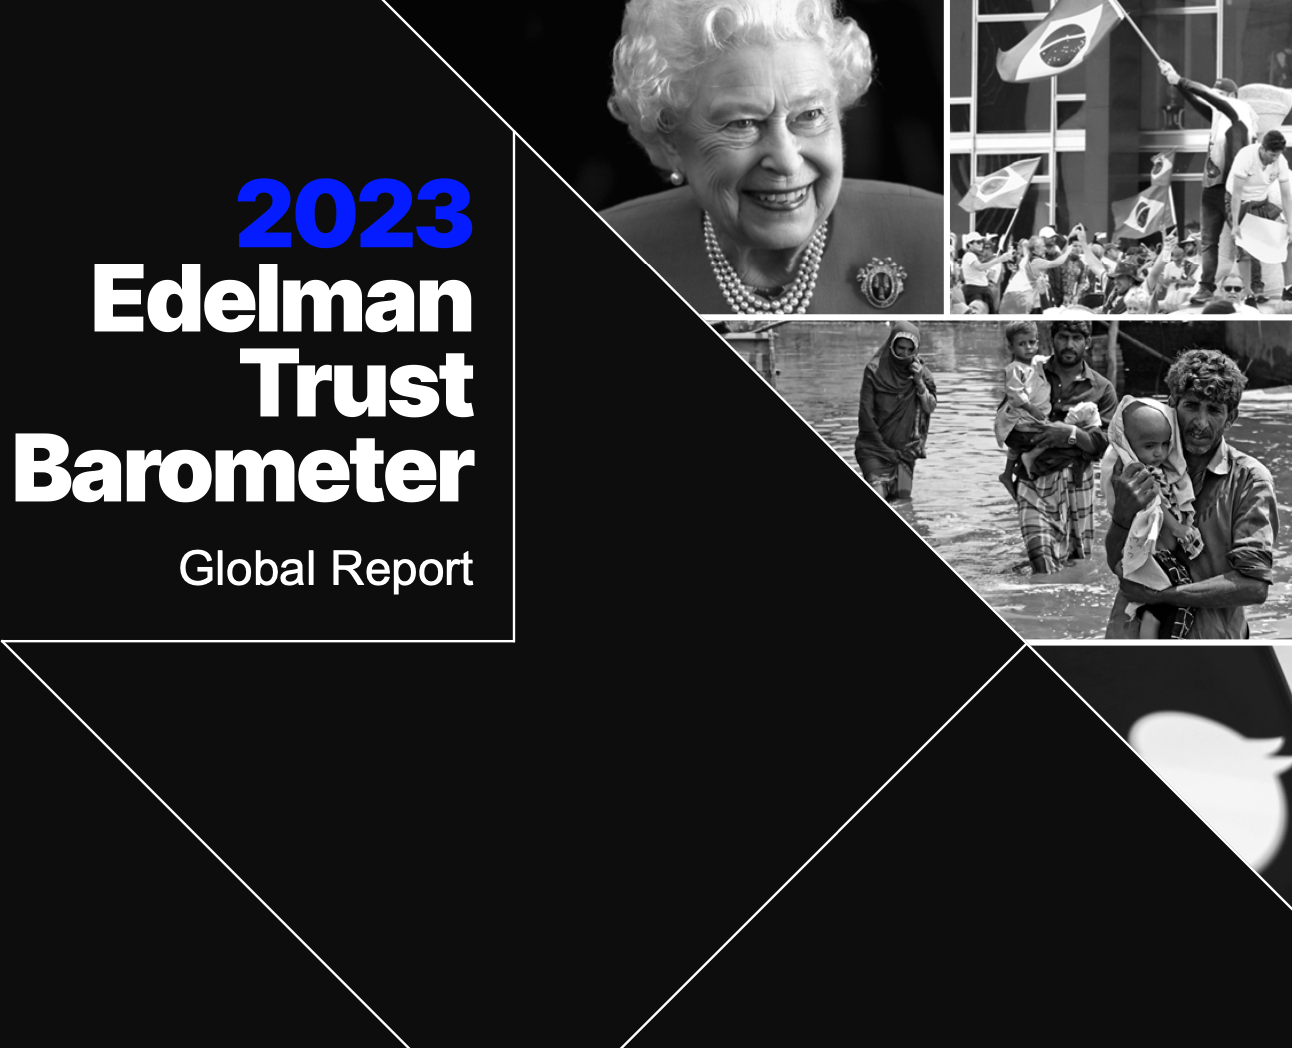 Læs de vigtigste pointer fra Edelman Trust Barometer 2023.